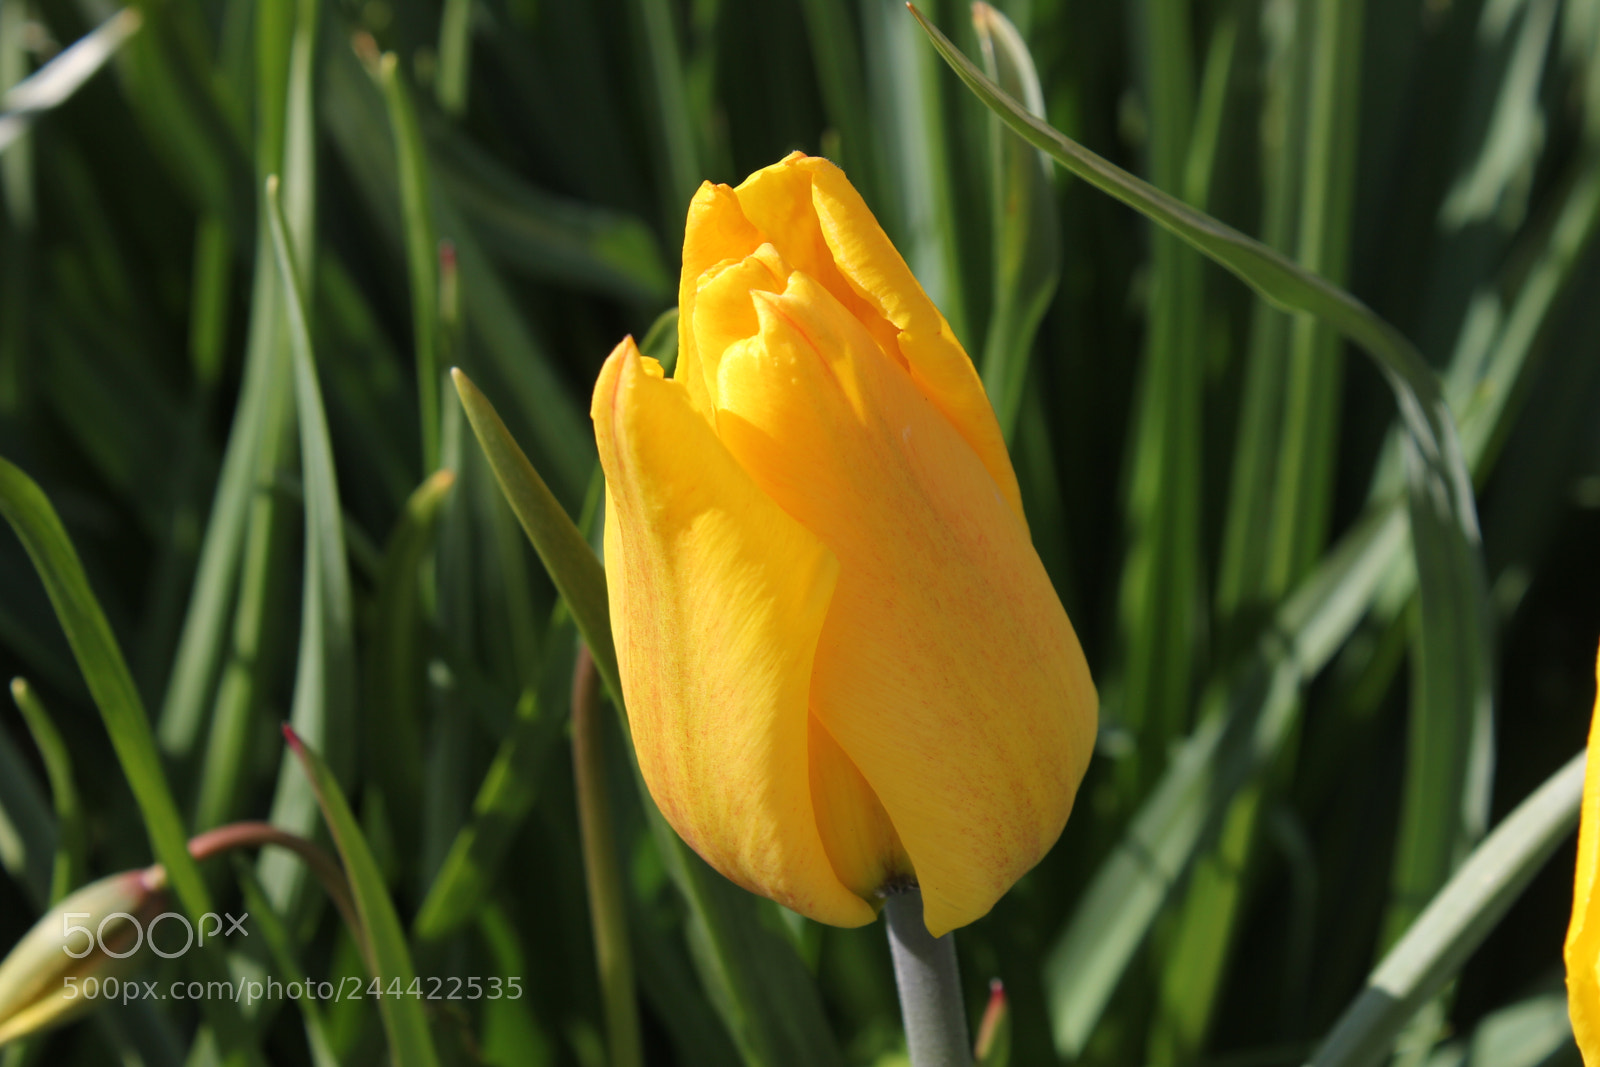 Canon EOS 550D (EOS Rebel T2i / EOS Kiss X4) sample photo. Tulips edward's garden, toronto photography